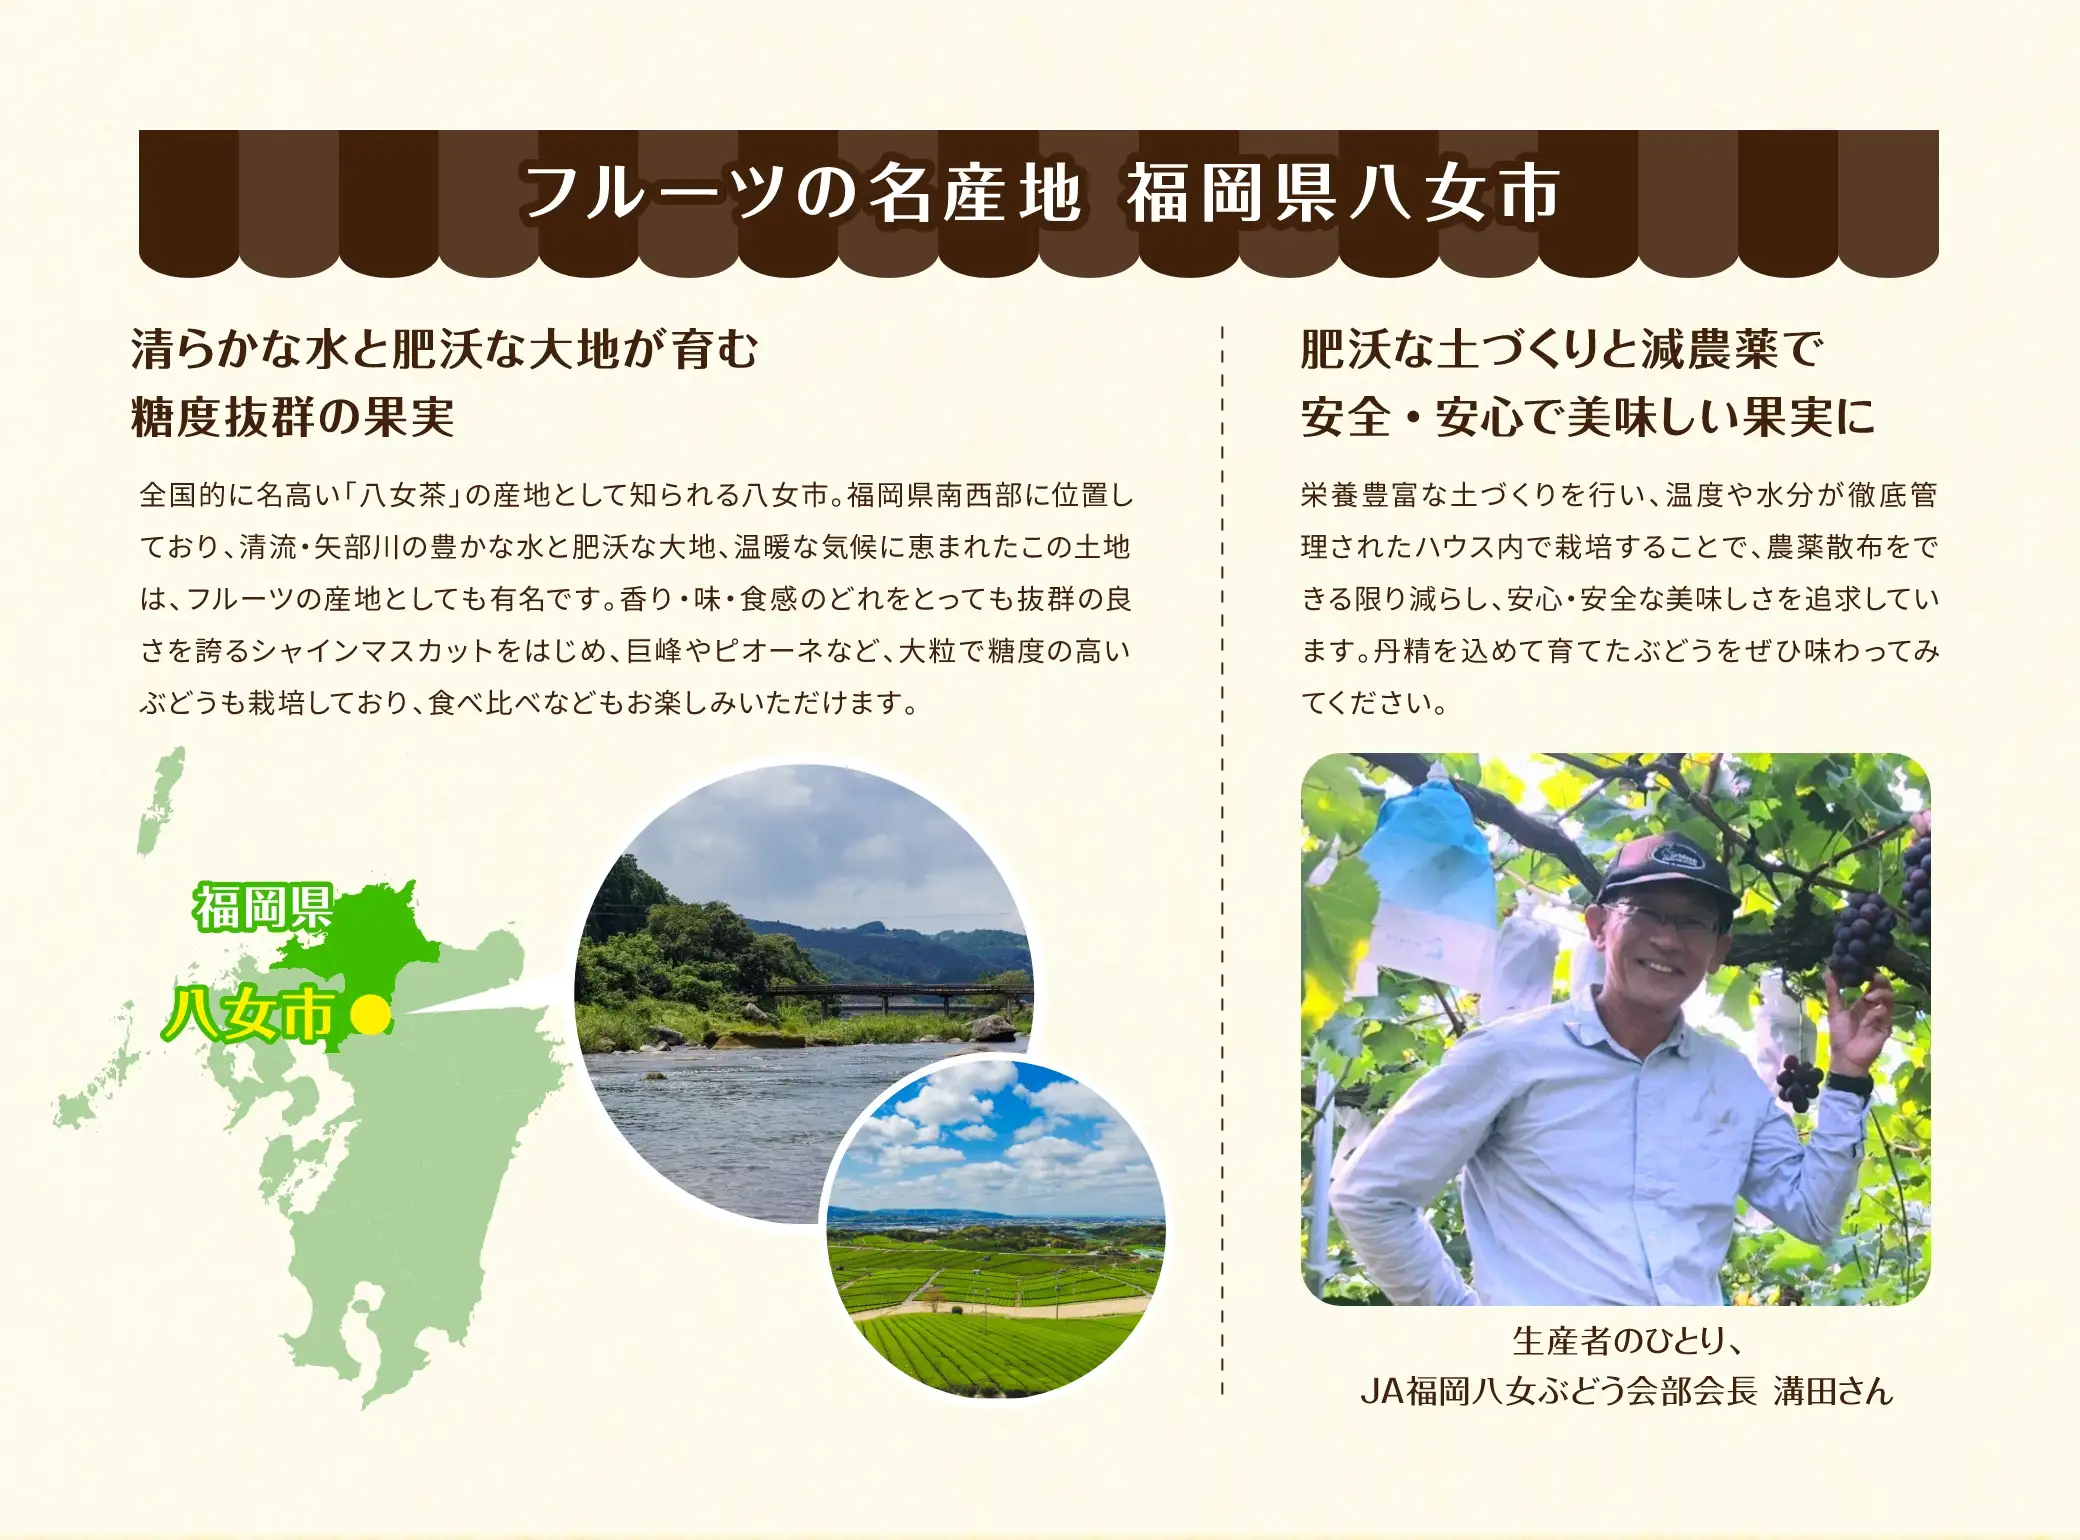 フルーツの名産地 福岡県八女市：福岡県南西部に位置しており、清流・矢部川の豊かな水と肥沃な大地、温暖な気候に恵まれたこの大地は、フルーツの産地としても有名です。